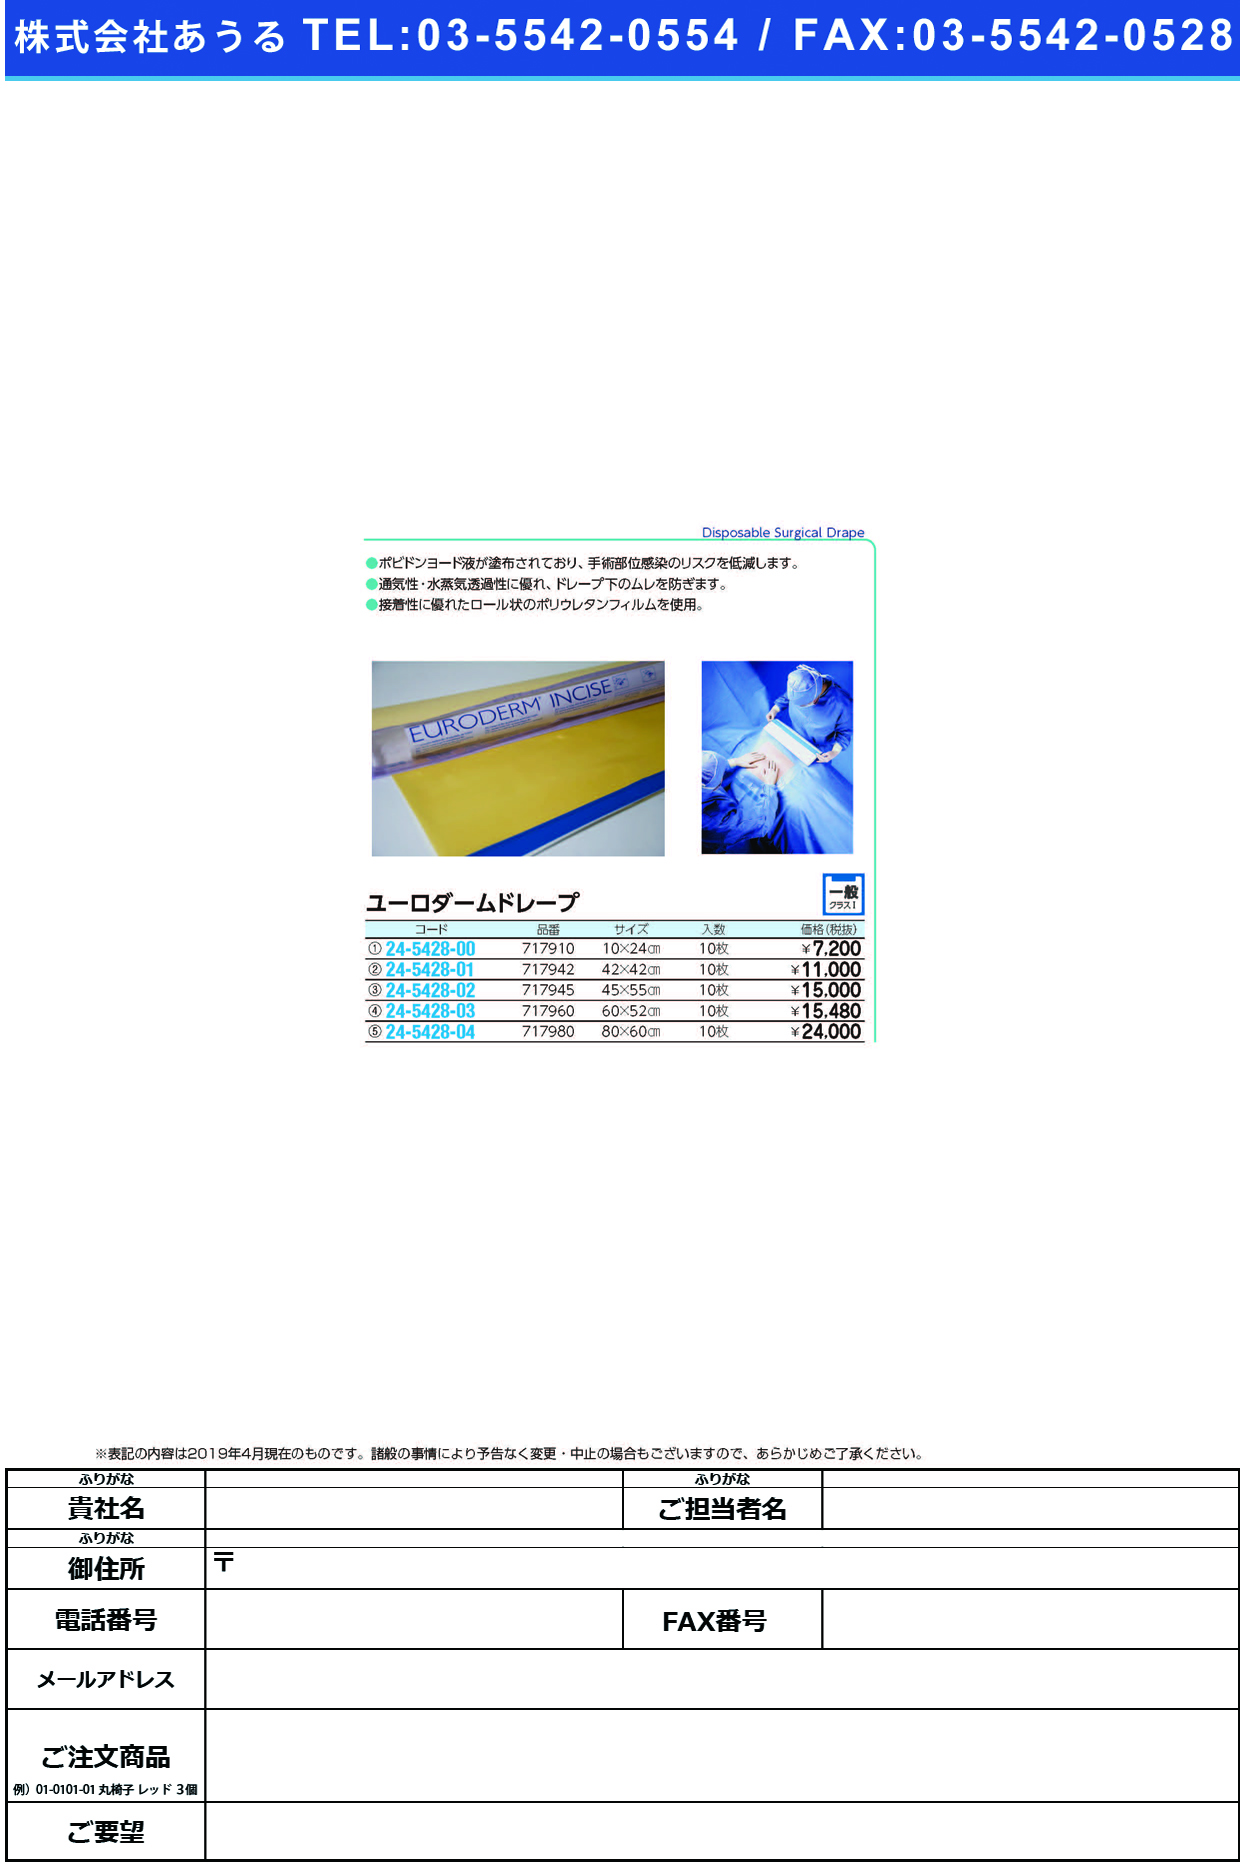 (24-5428-04)ユーロダームドレープ 717980(80X60CM)10ﾏｲ ﾕｰﾛﾀﾞｰﾑﾄﾞﾚｰﾌﾟ【1箱単位】【2019年カタログ商品】